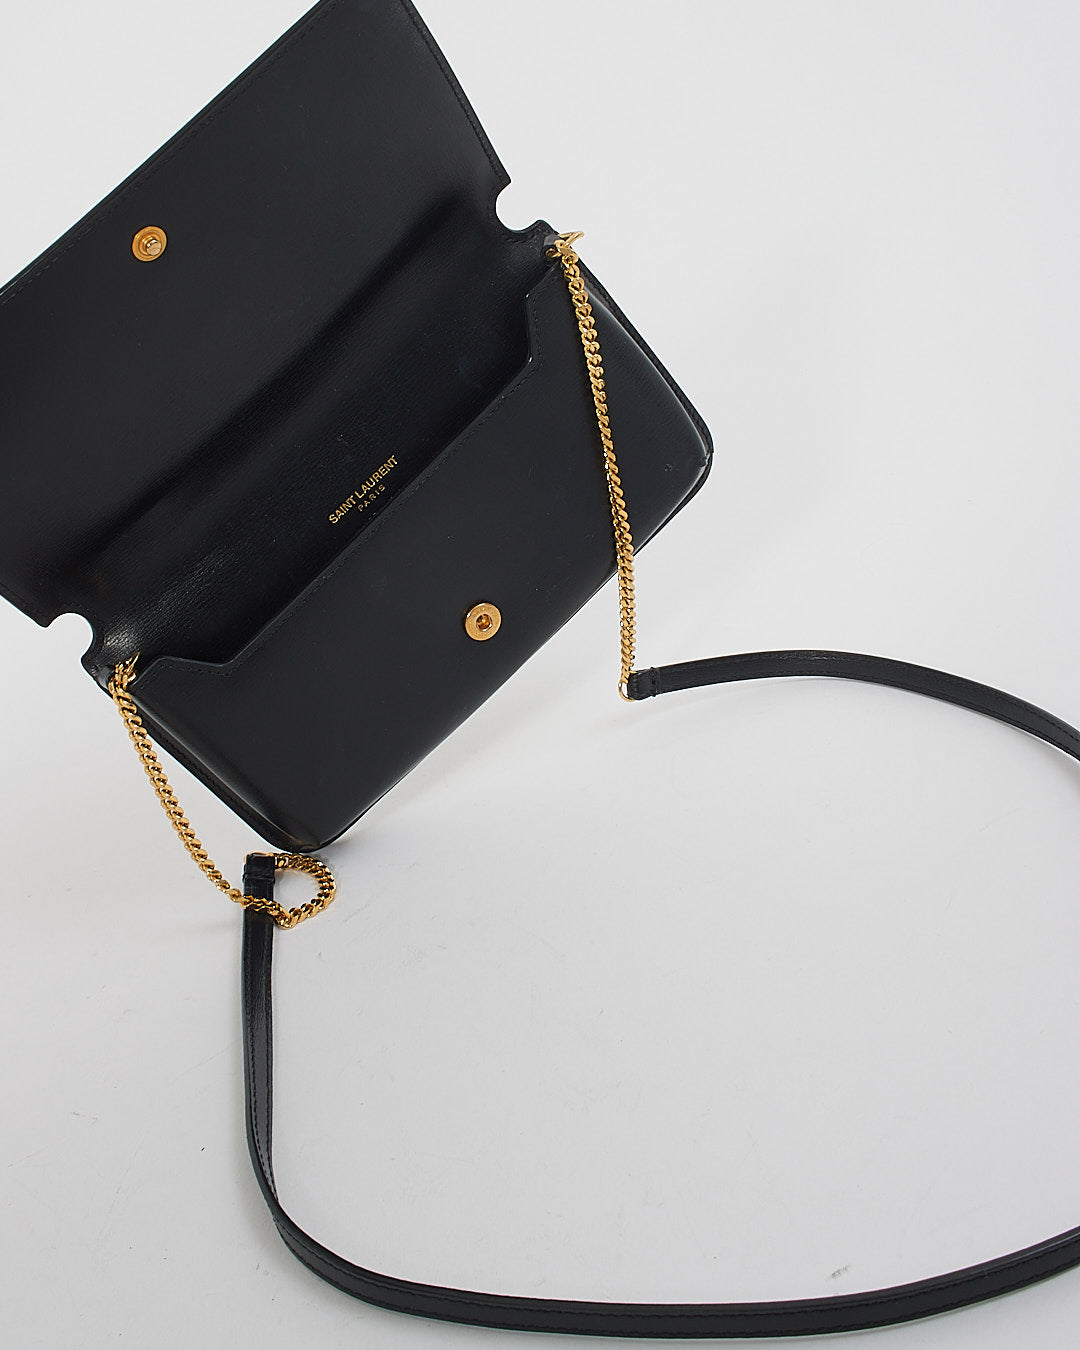 Saint Laurent Porte-téléphone Cassandre en cuir noir avec logo sur sac à chaîne